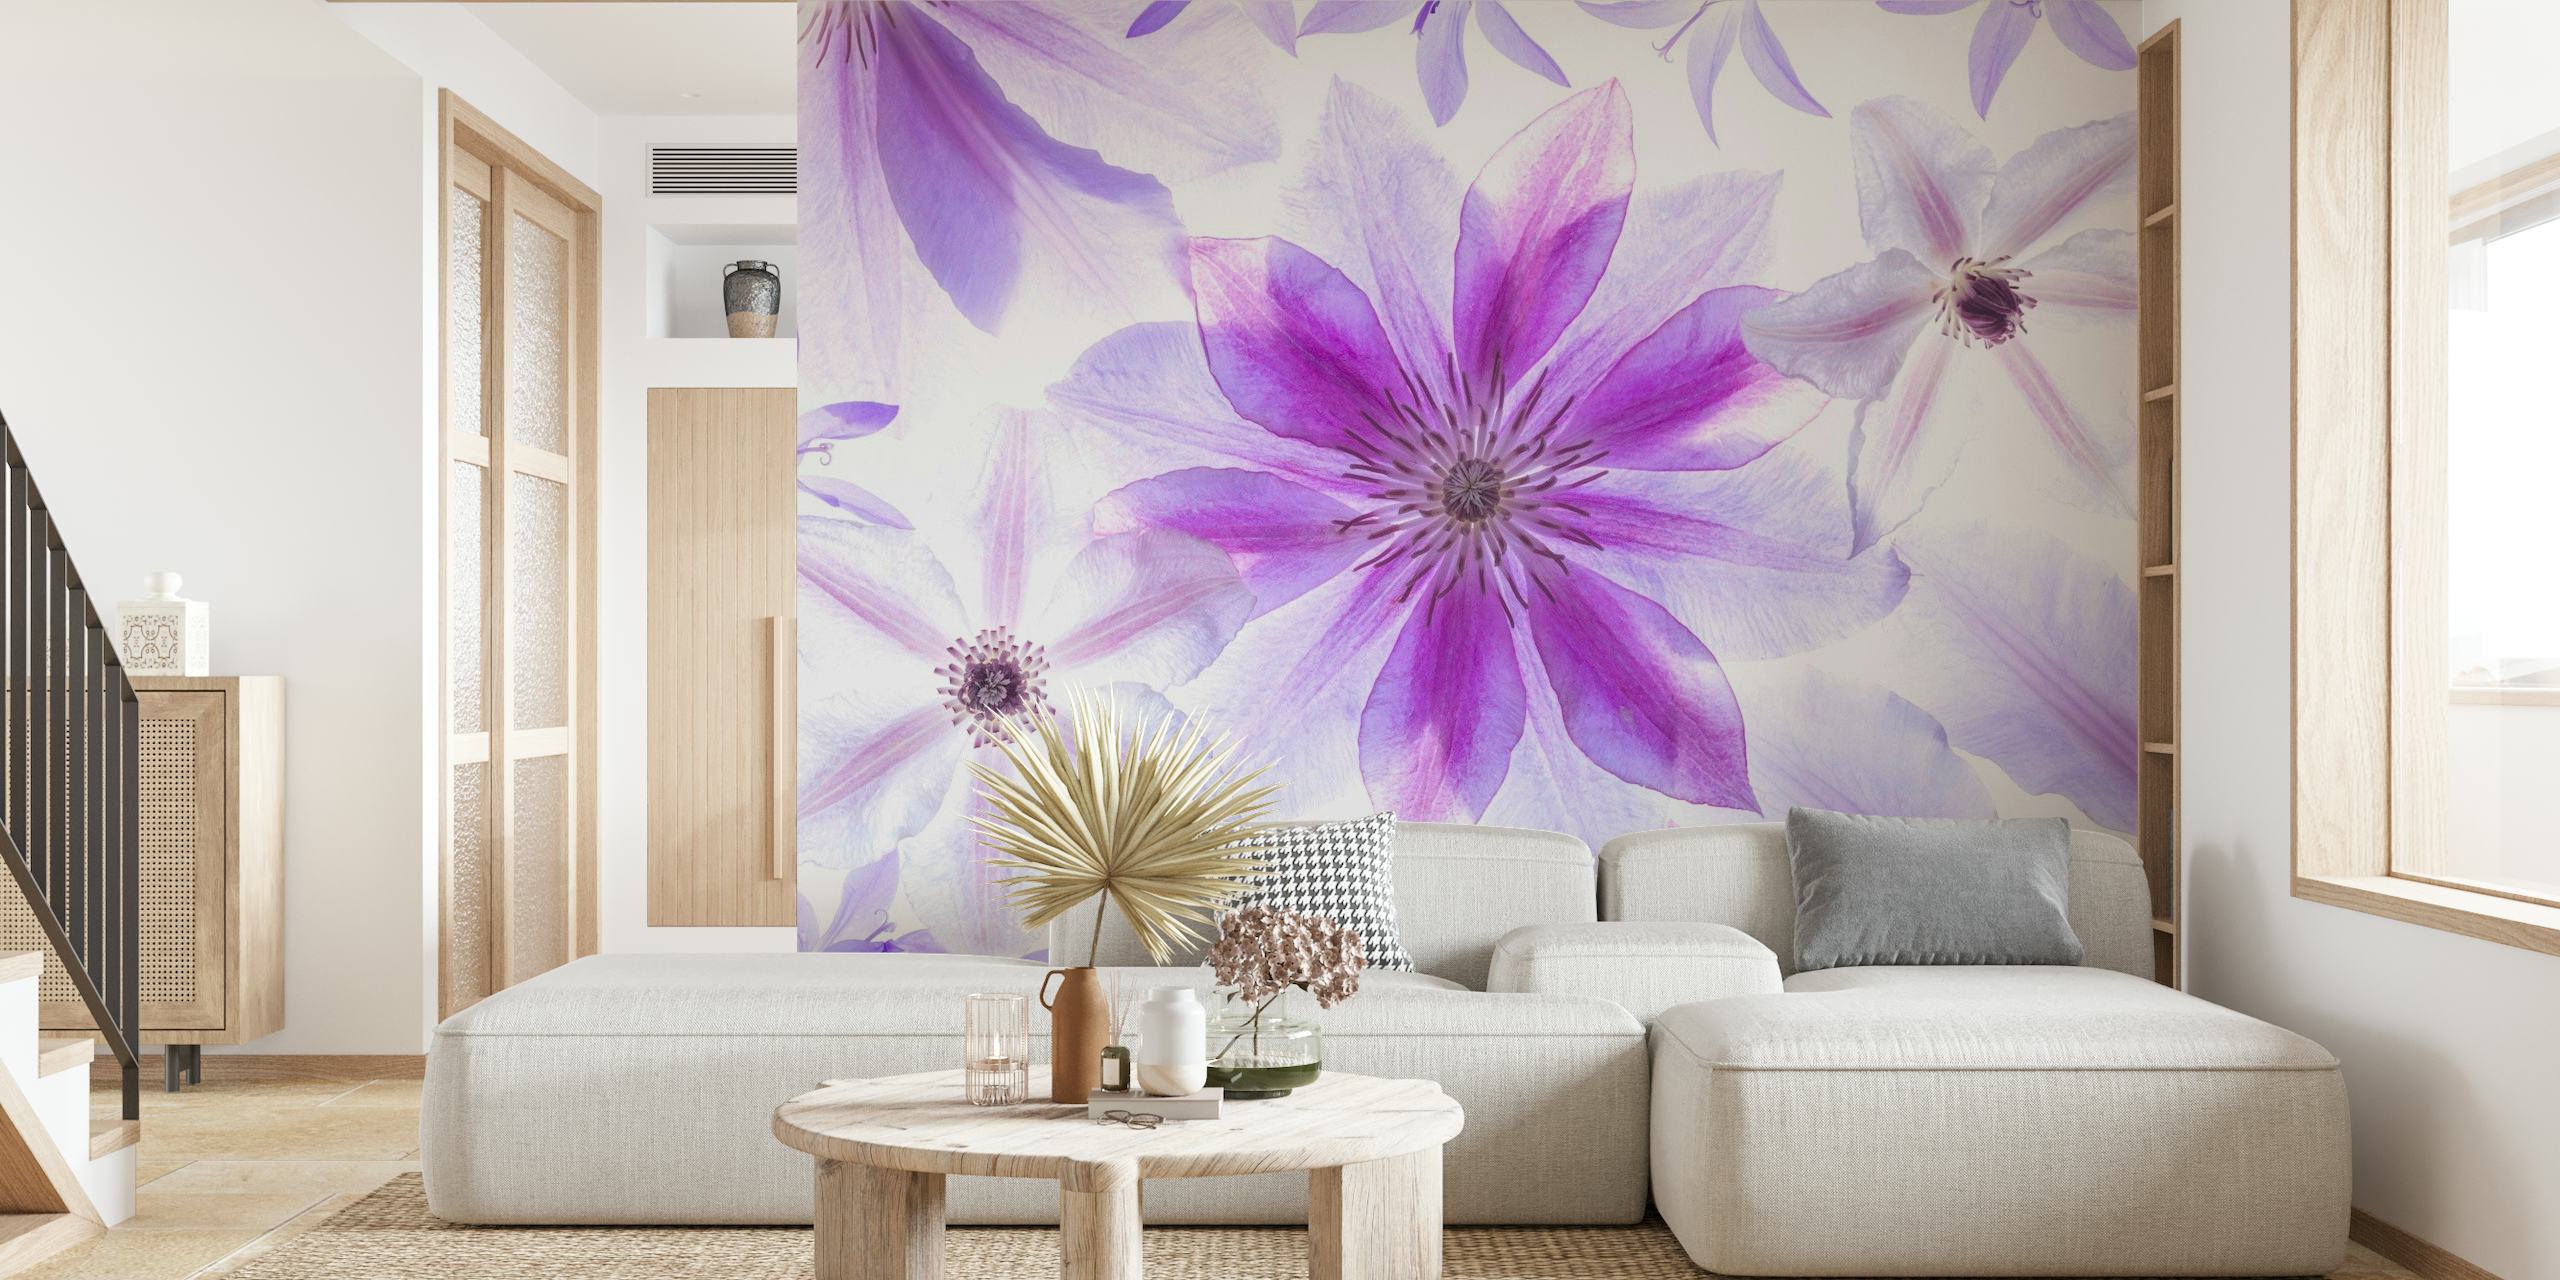 Paarse en witte clematis bloemen muurschildering voor interieur